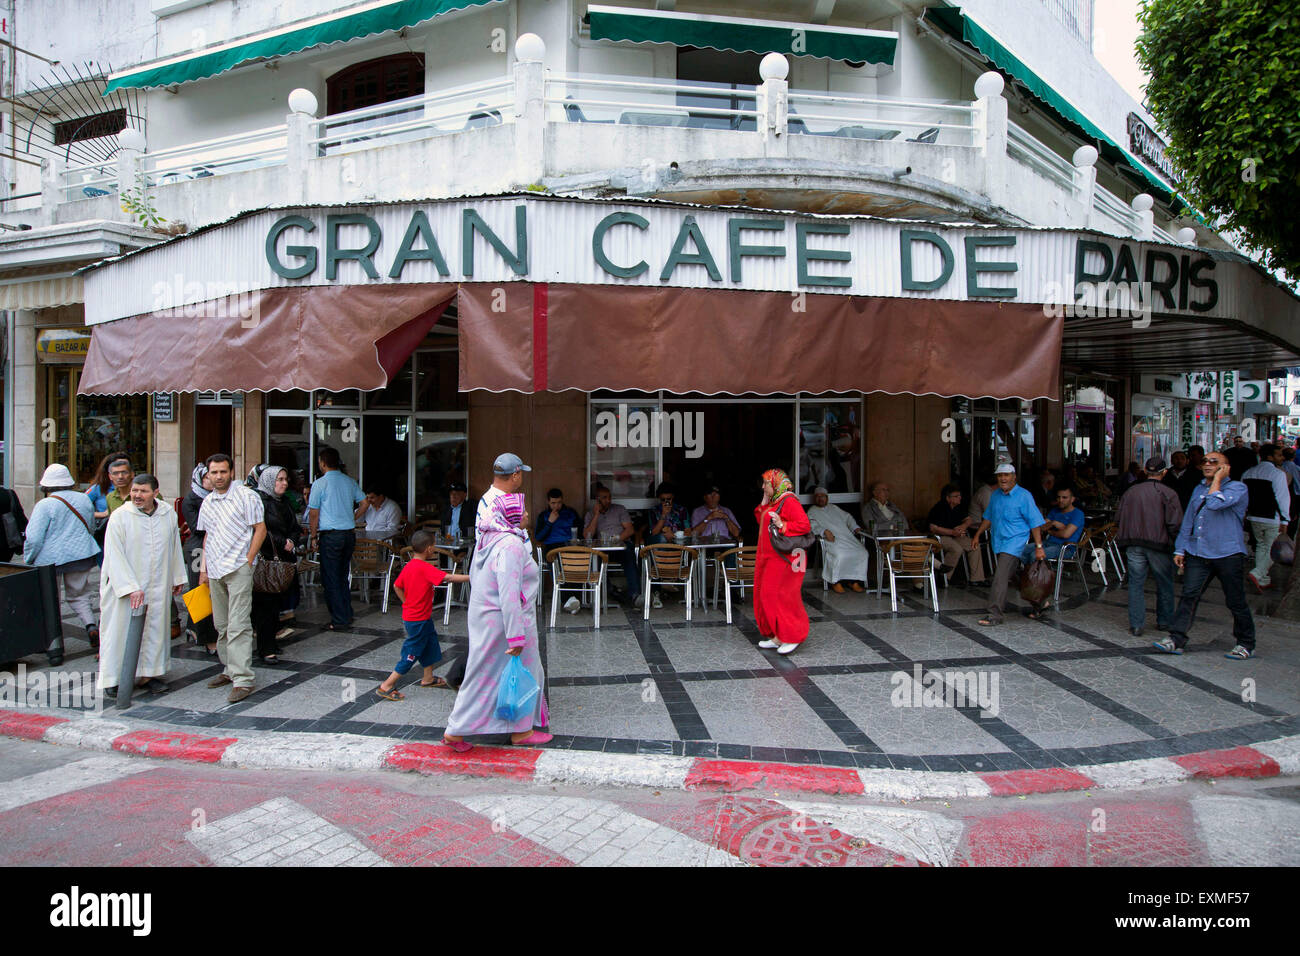 Gran Cafe De Paris Stock Photos & Gran Cafe De Paris Stock Images ...